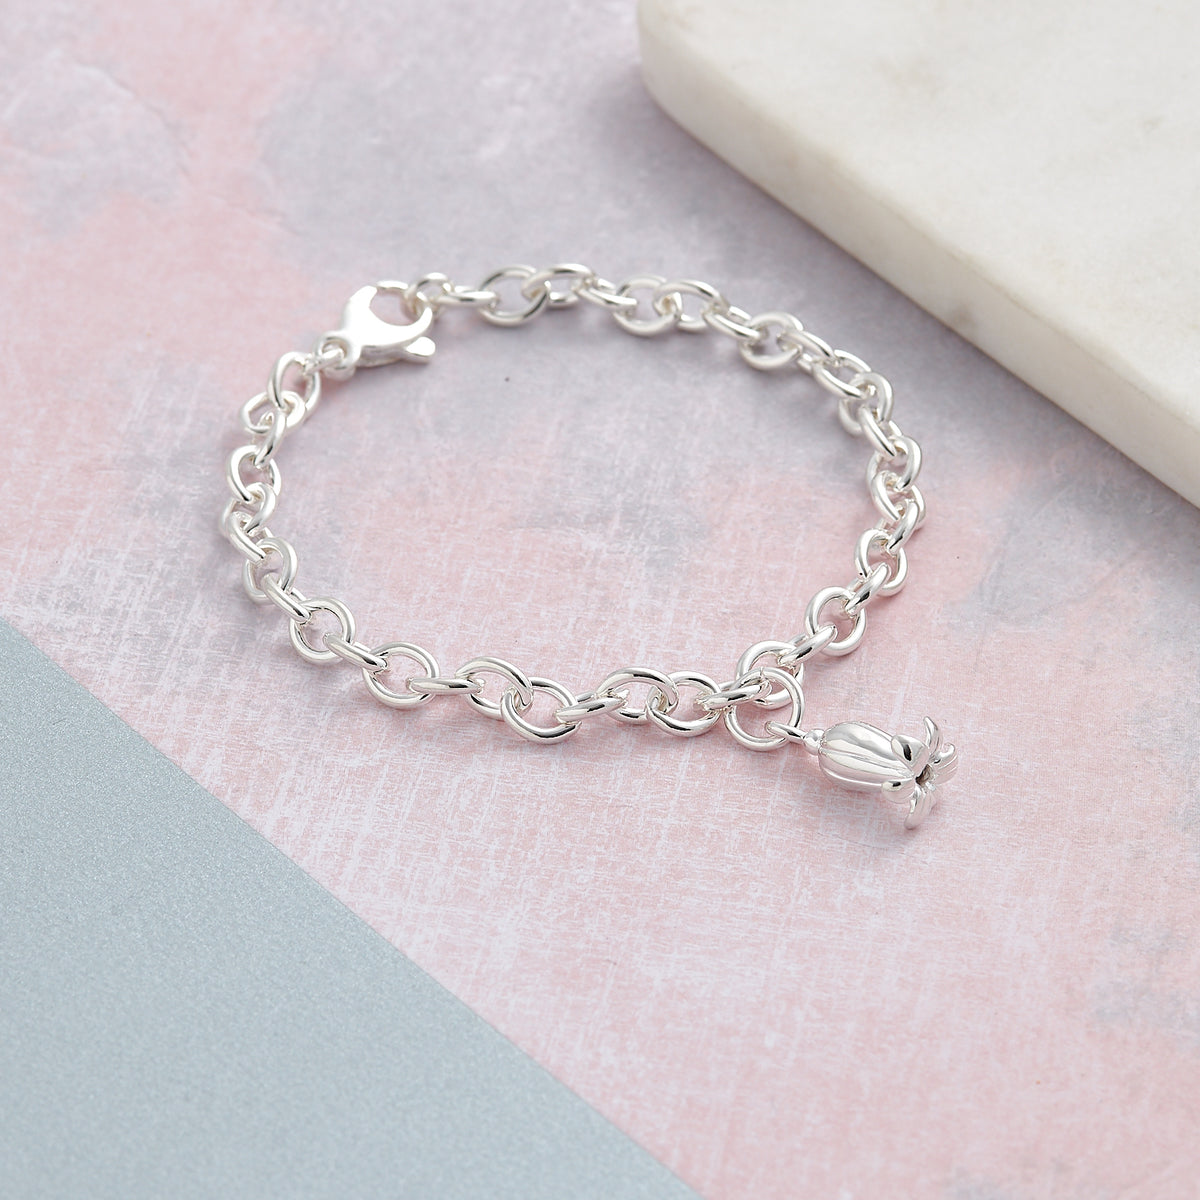 Solid sterling silver bluebell flower charm bracelet designer Scarlett Jewellery